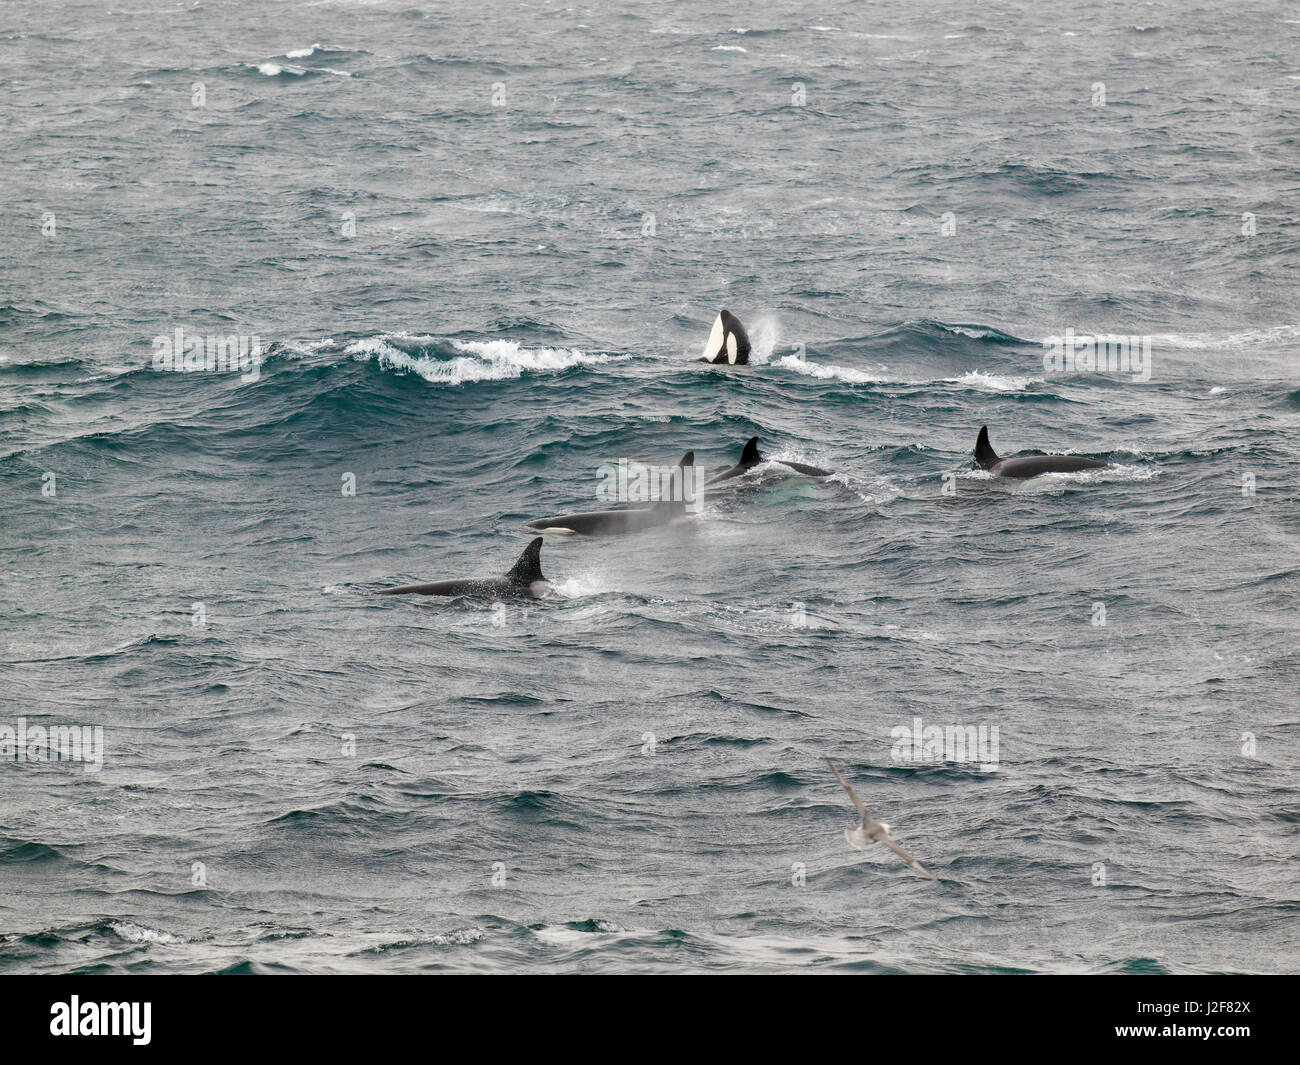 Orca in der Nordsee. Nur selten fotografiert in der Nordsee. Orcas (Killerwale) können im Einzelfall aufgrund der natürlichen Markierungen und Unterschiede in Fin Form identifiziert werden. Orcas haben eine offensichtliche Rückenflosse, die in Form und Größe, oft mit markanten Kerben oder Narben unterschiedlich. Der Sattel-Patch auch variiert von Individuum zu Individuum in Form, Größe, Farbe und Narbenbildung Stockfoto